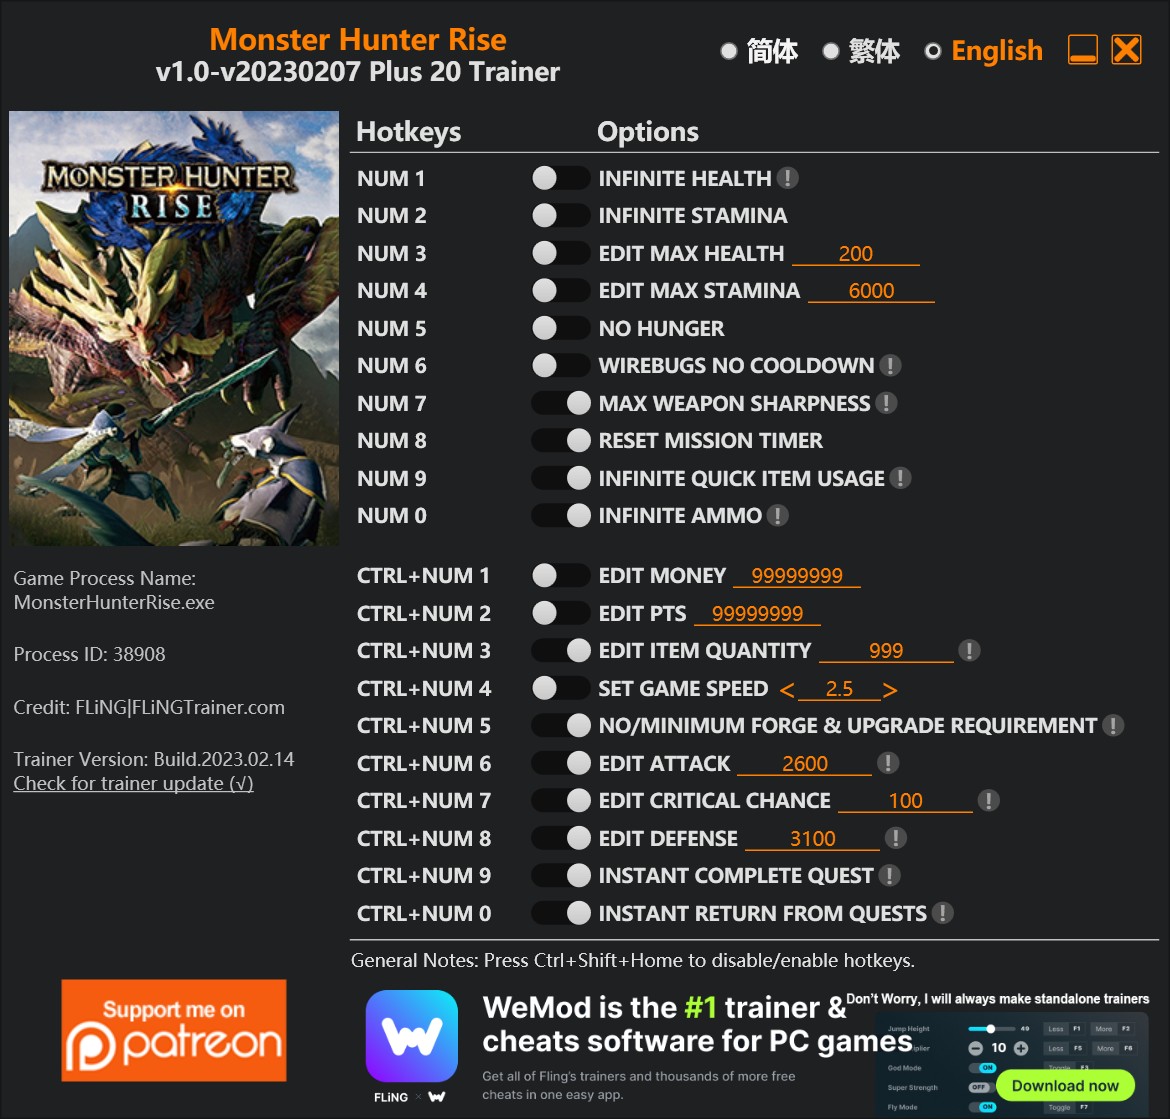 Monster Hunter Rise: Trainer +20 v1.0-v20220207 {FLiNG}